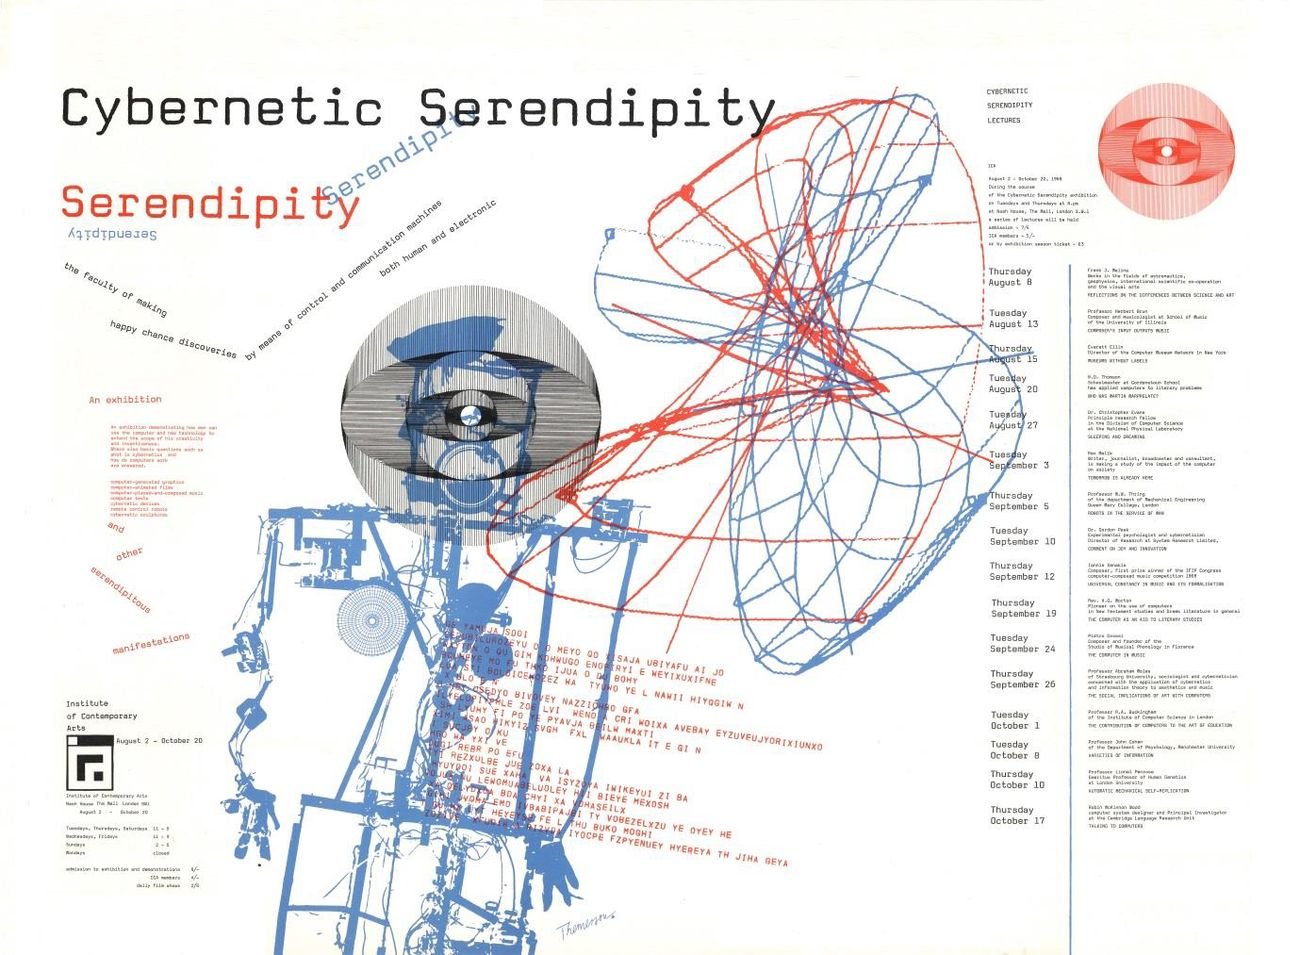 Il poster di Cybernetic Serendipity, la mostra curata da Jasia Reichardt per l'ICA di Londra nel 1968